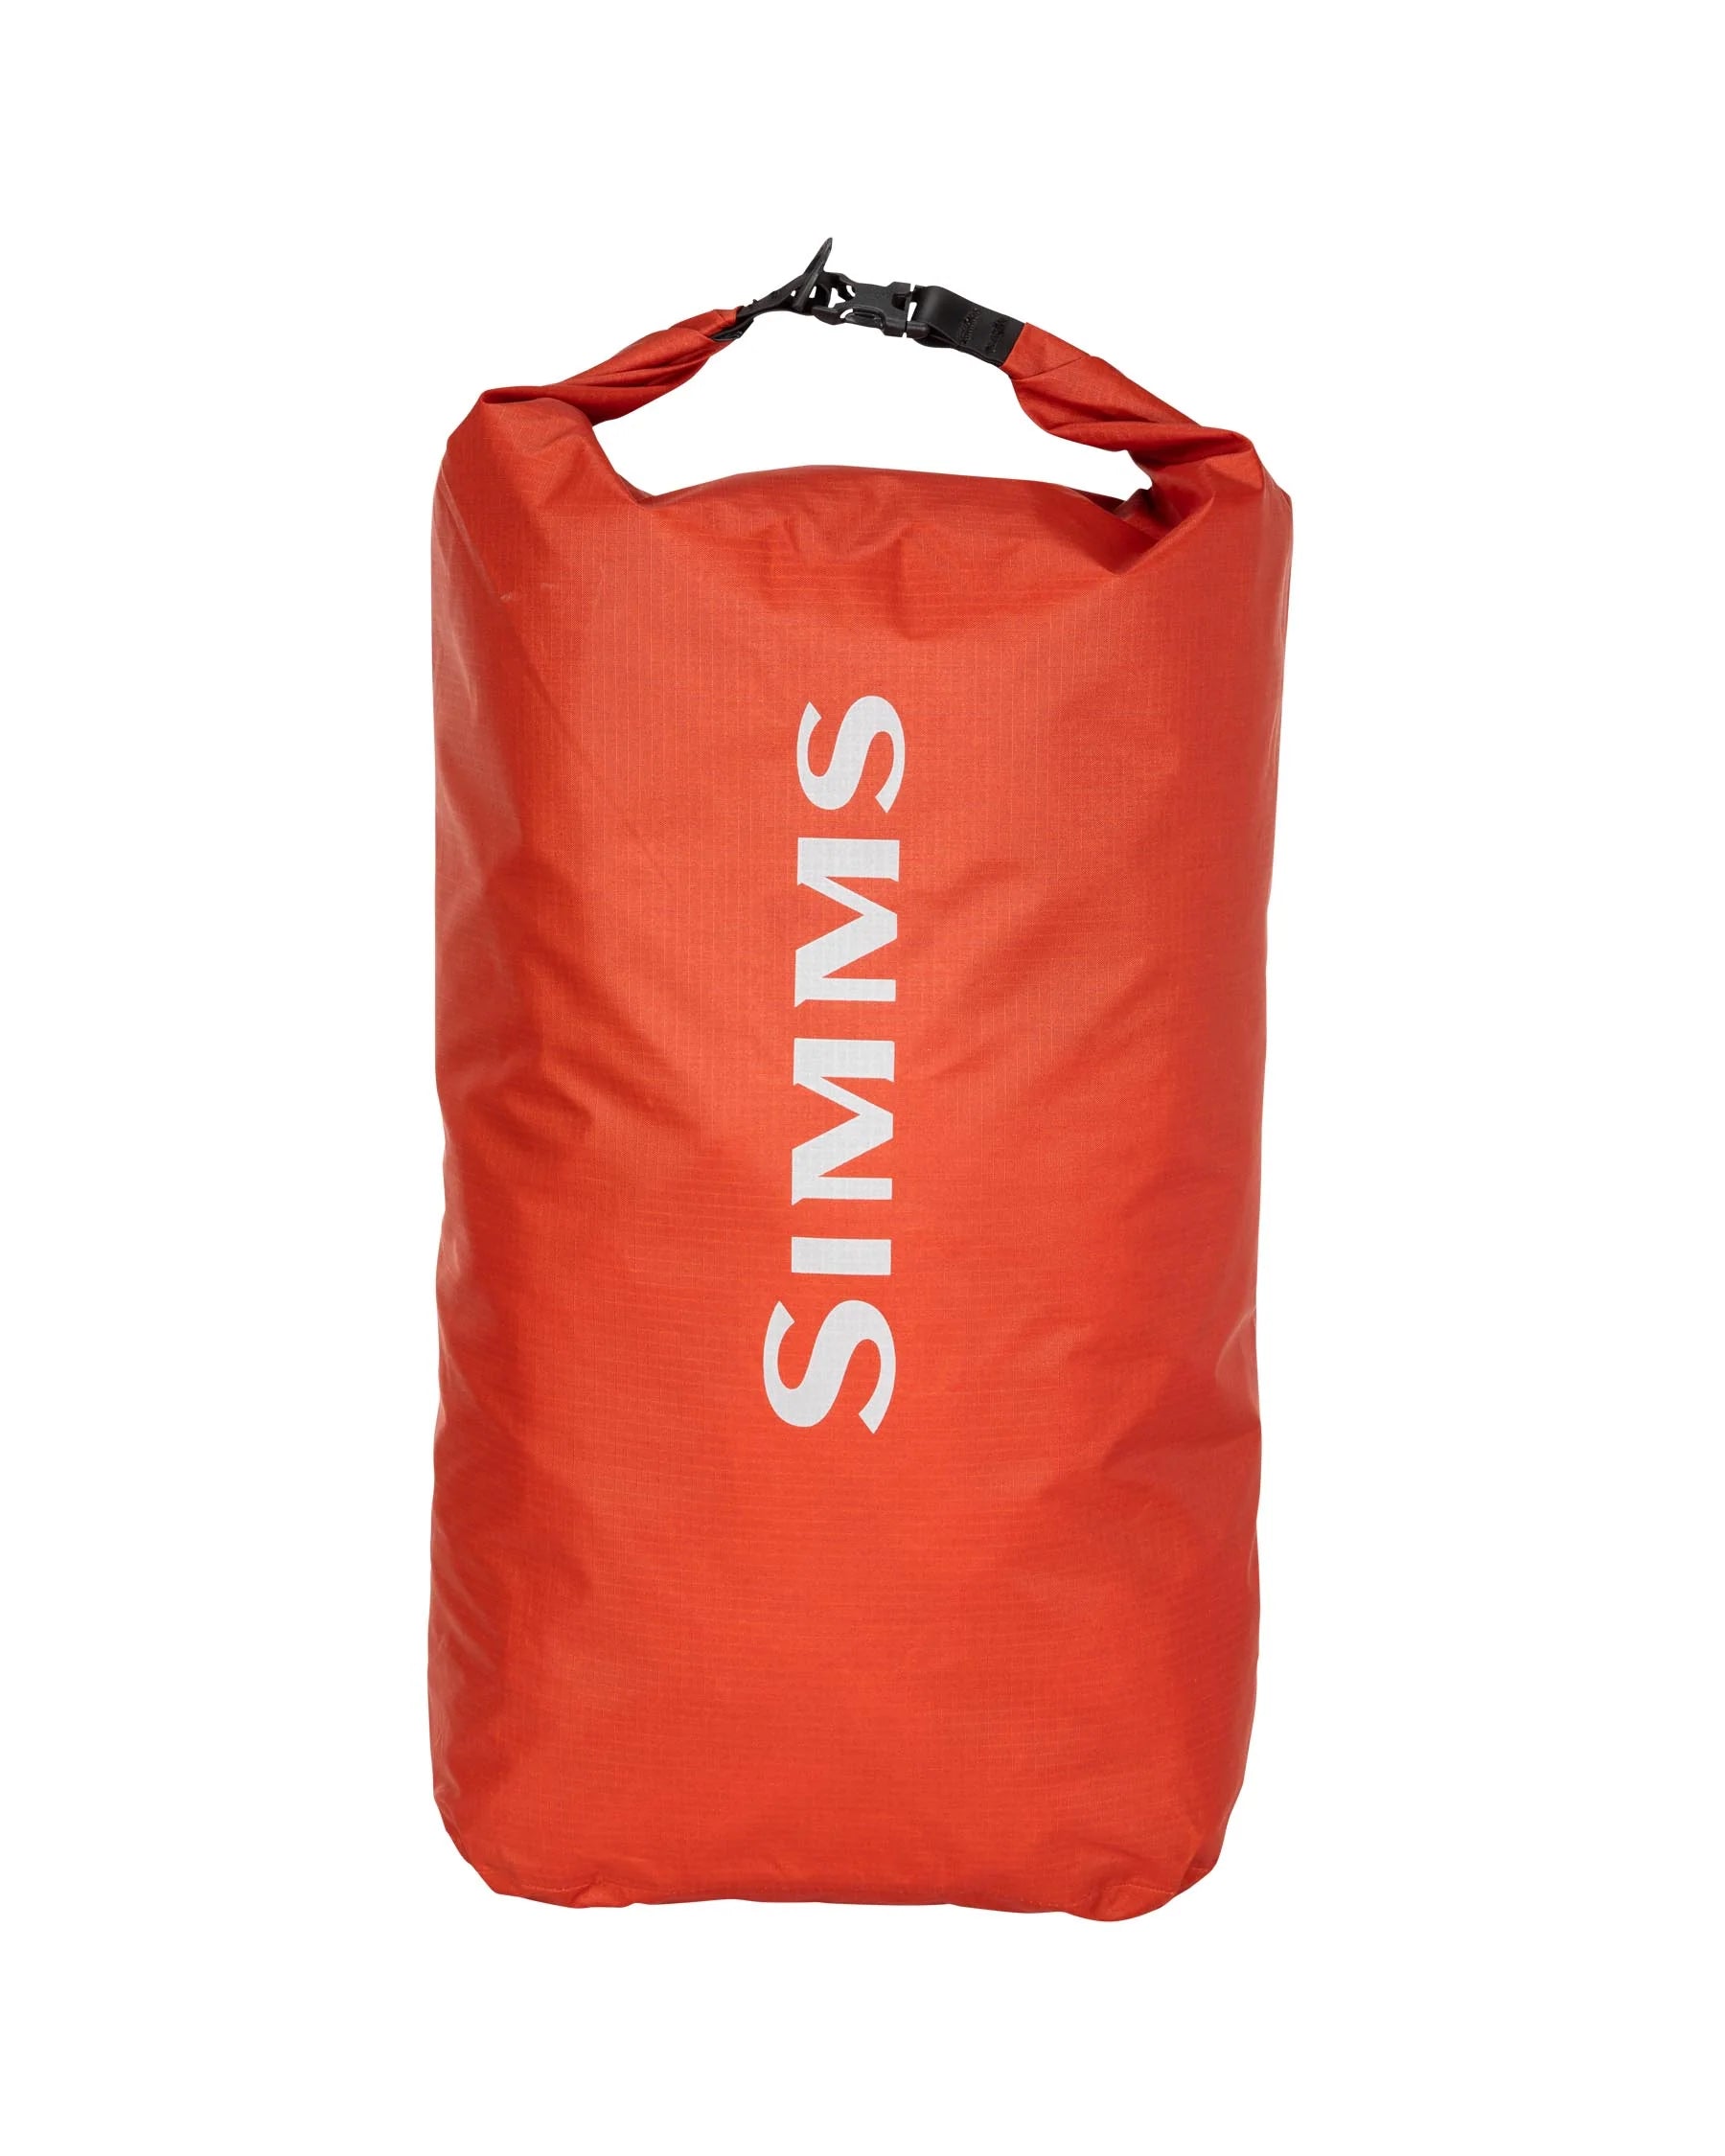 Simms Dry Creek Dry Bag - Large